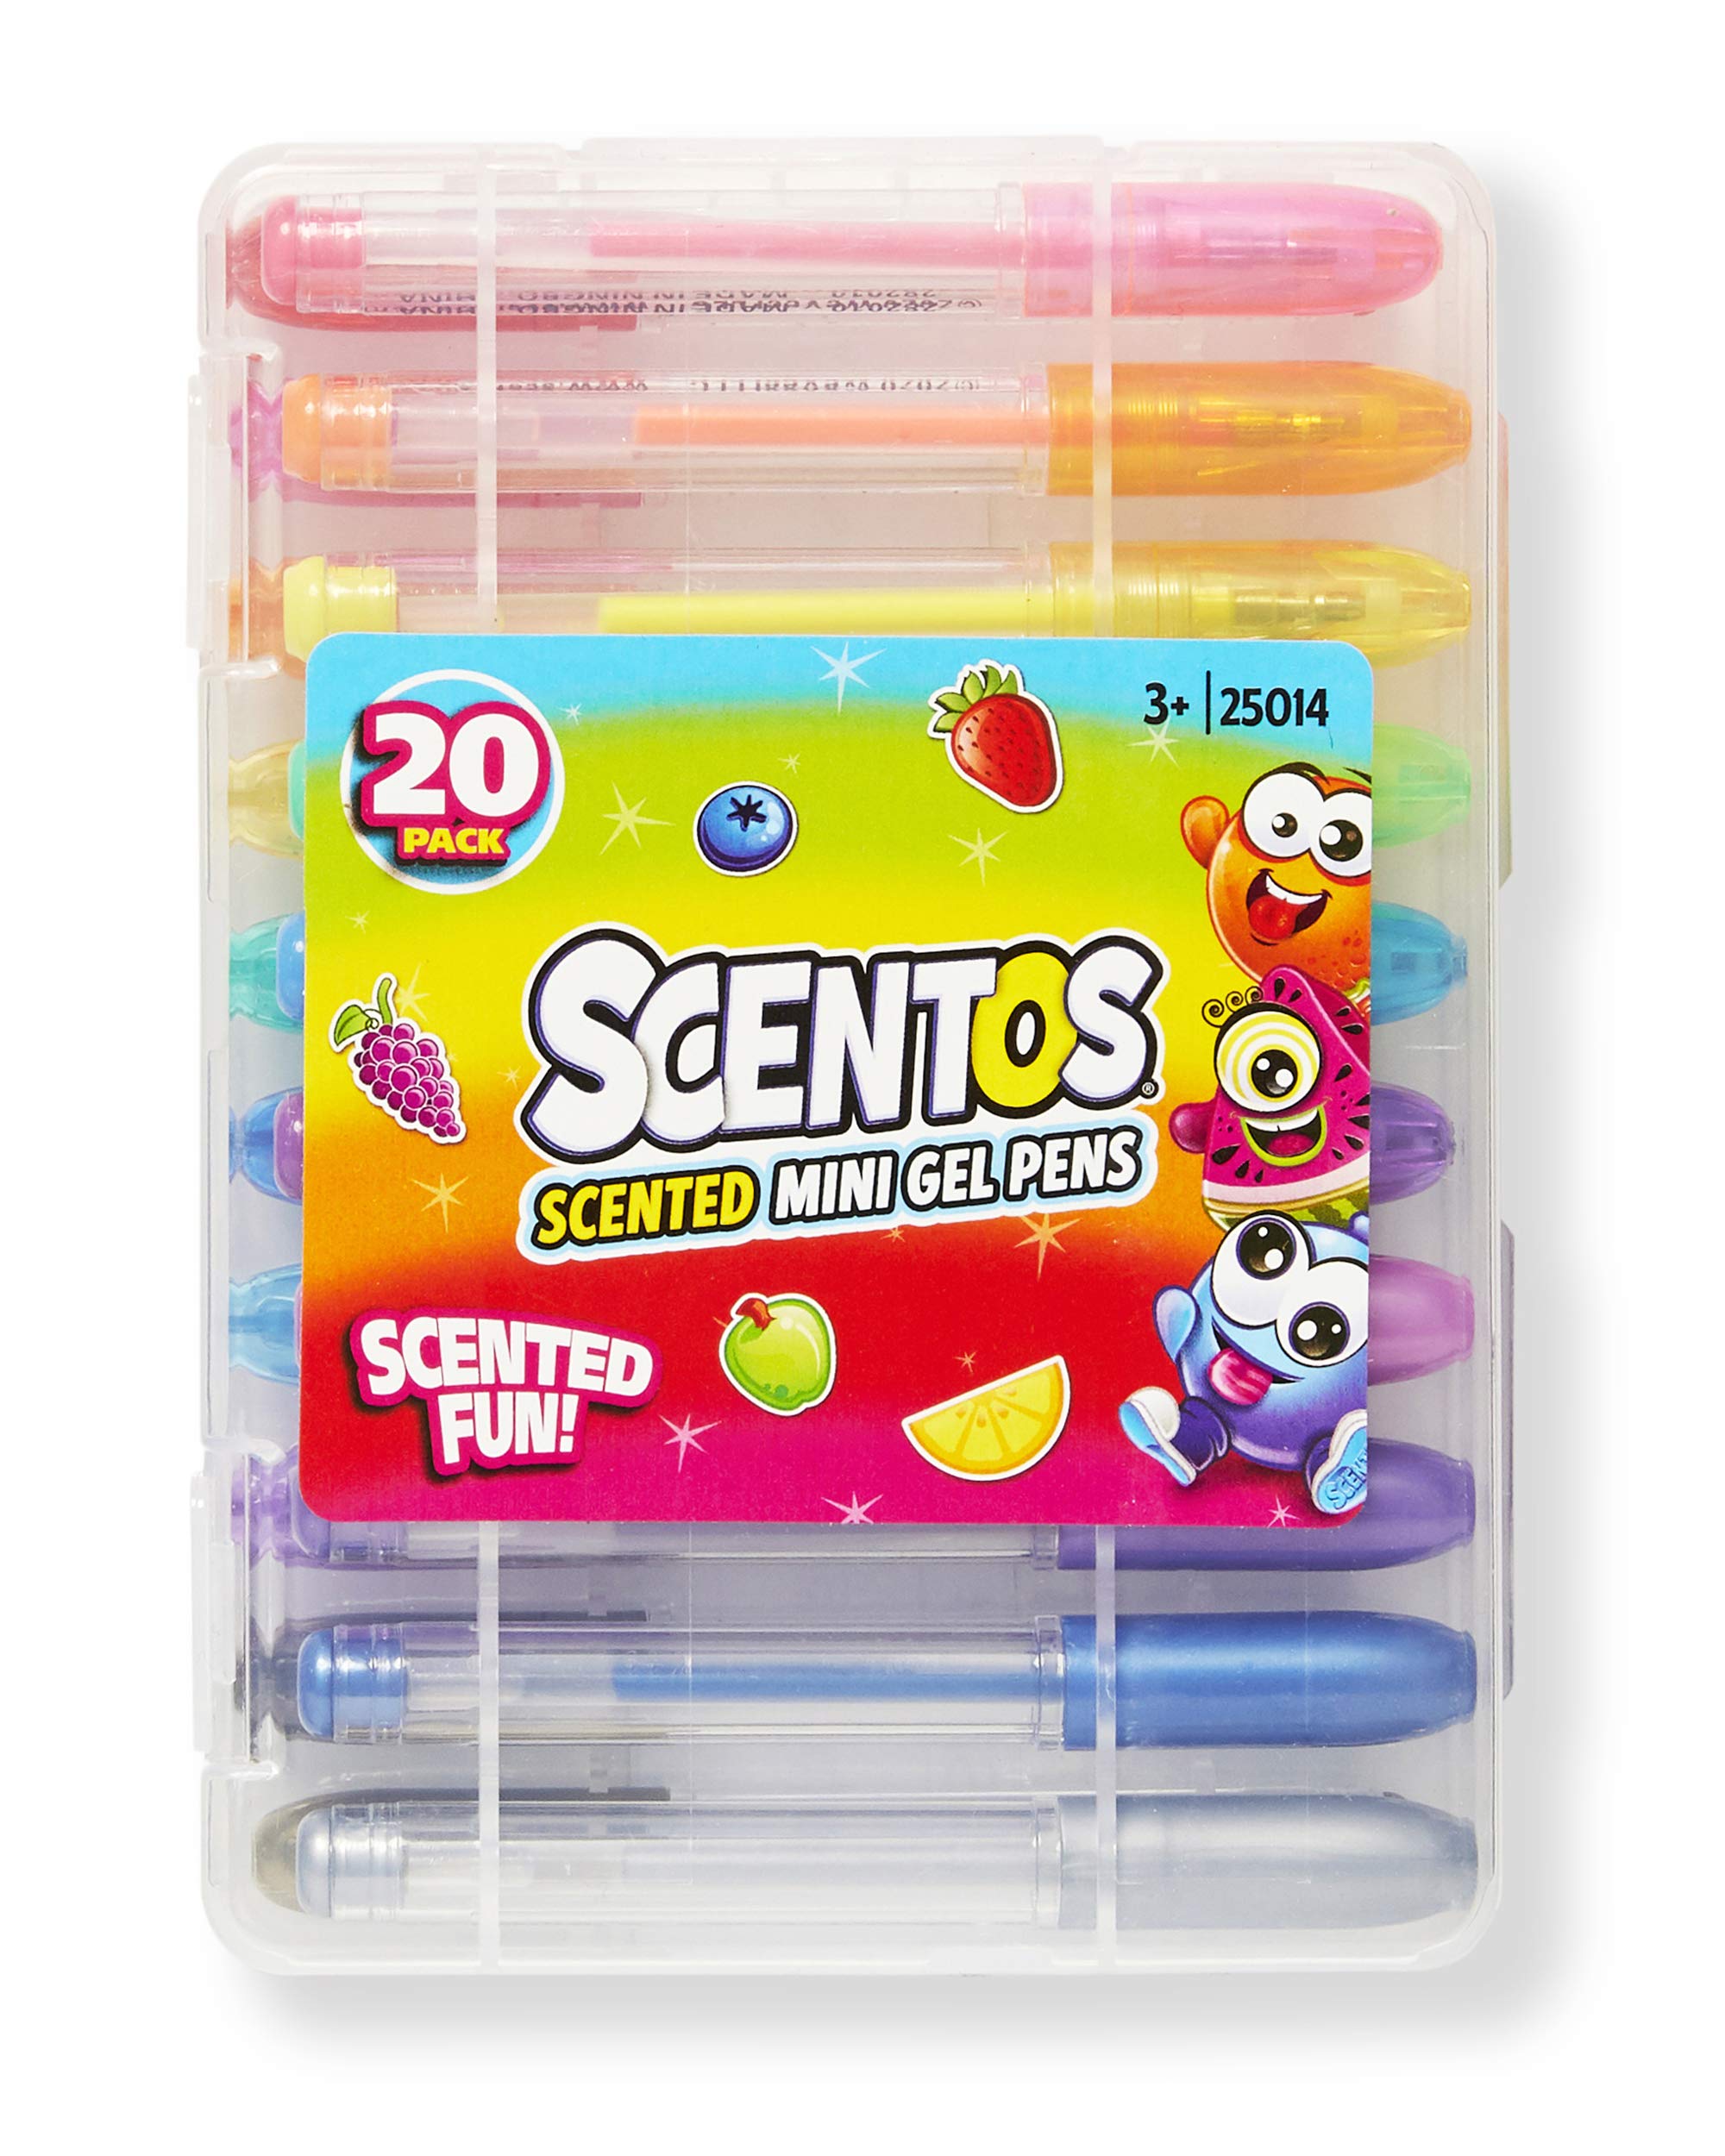 Scentos® Scented Gel Pens 8 Count Gel Pen Set